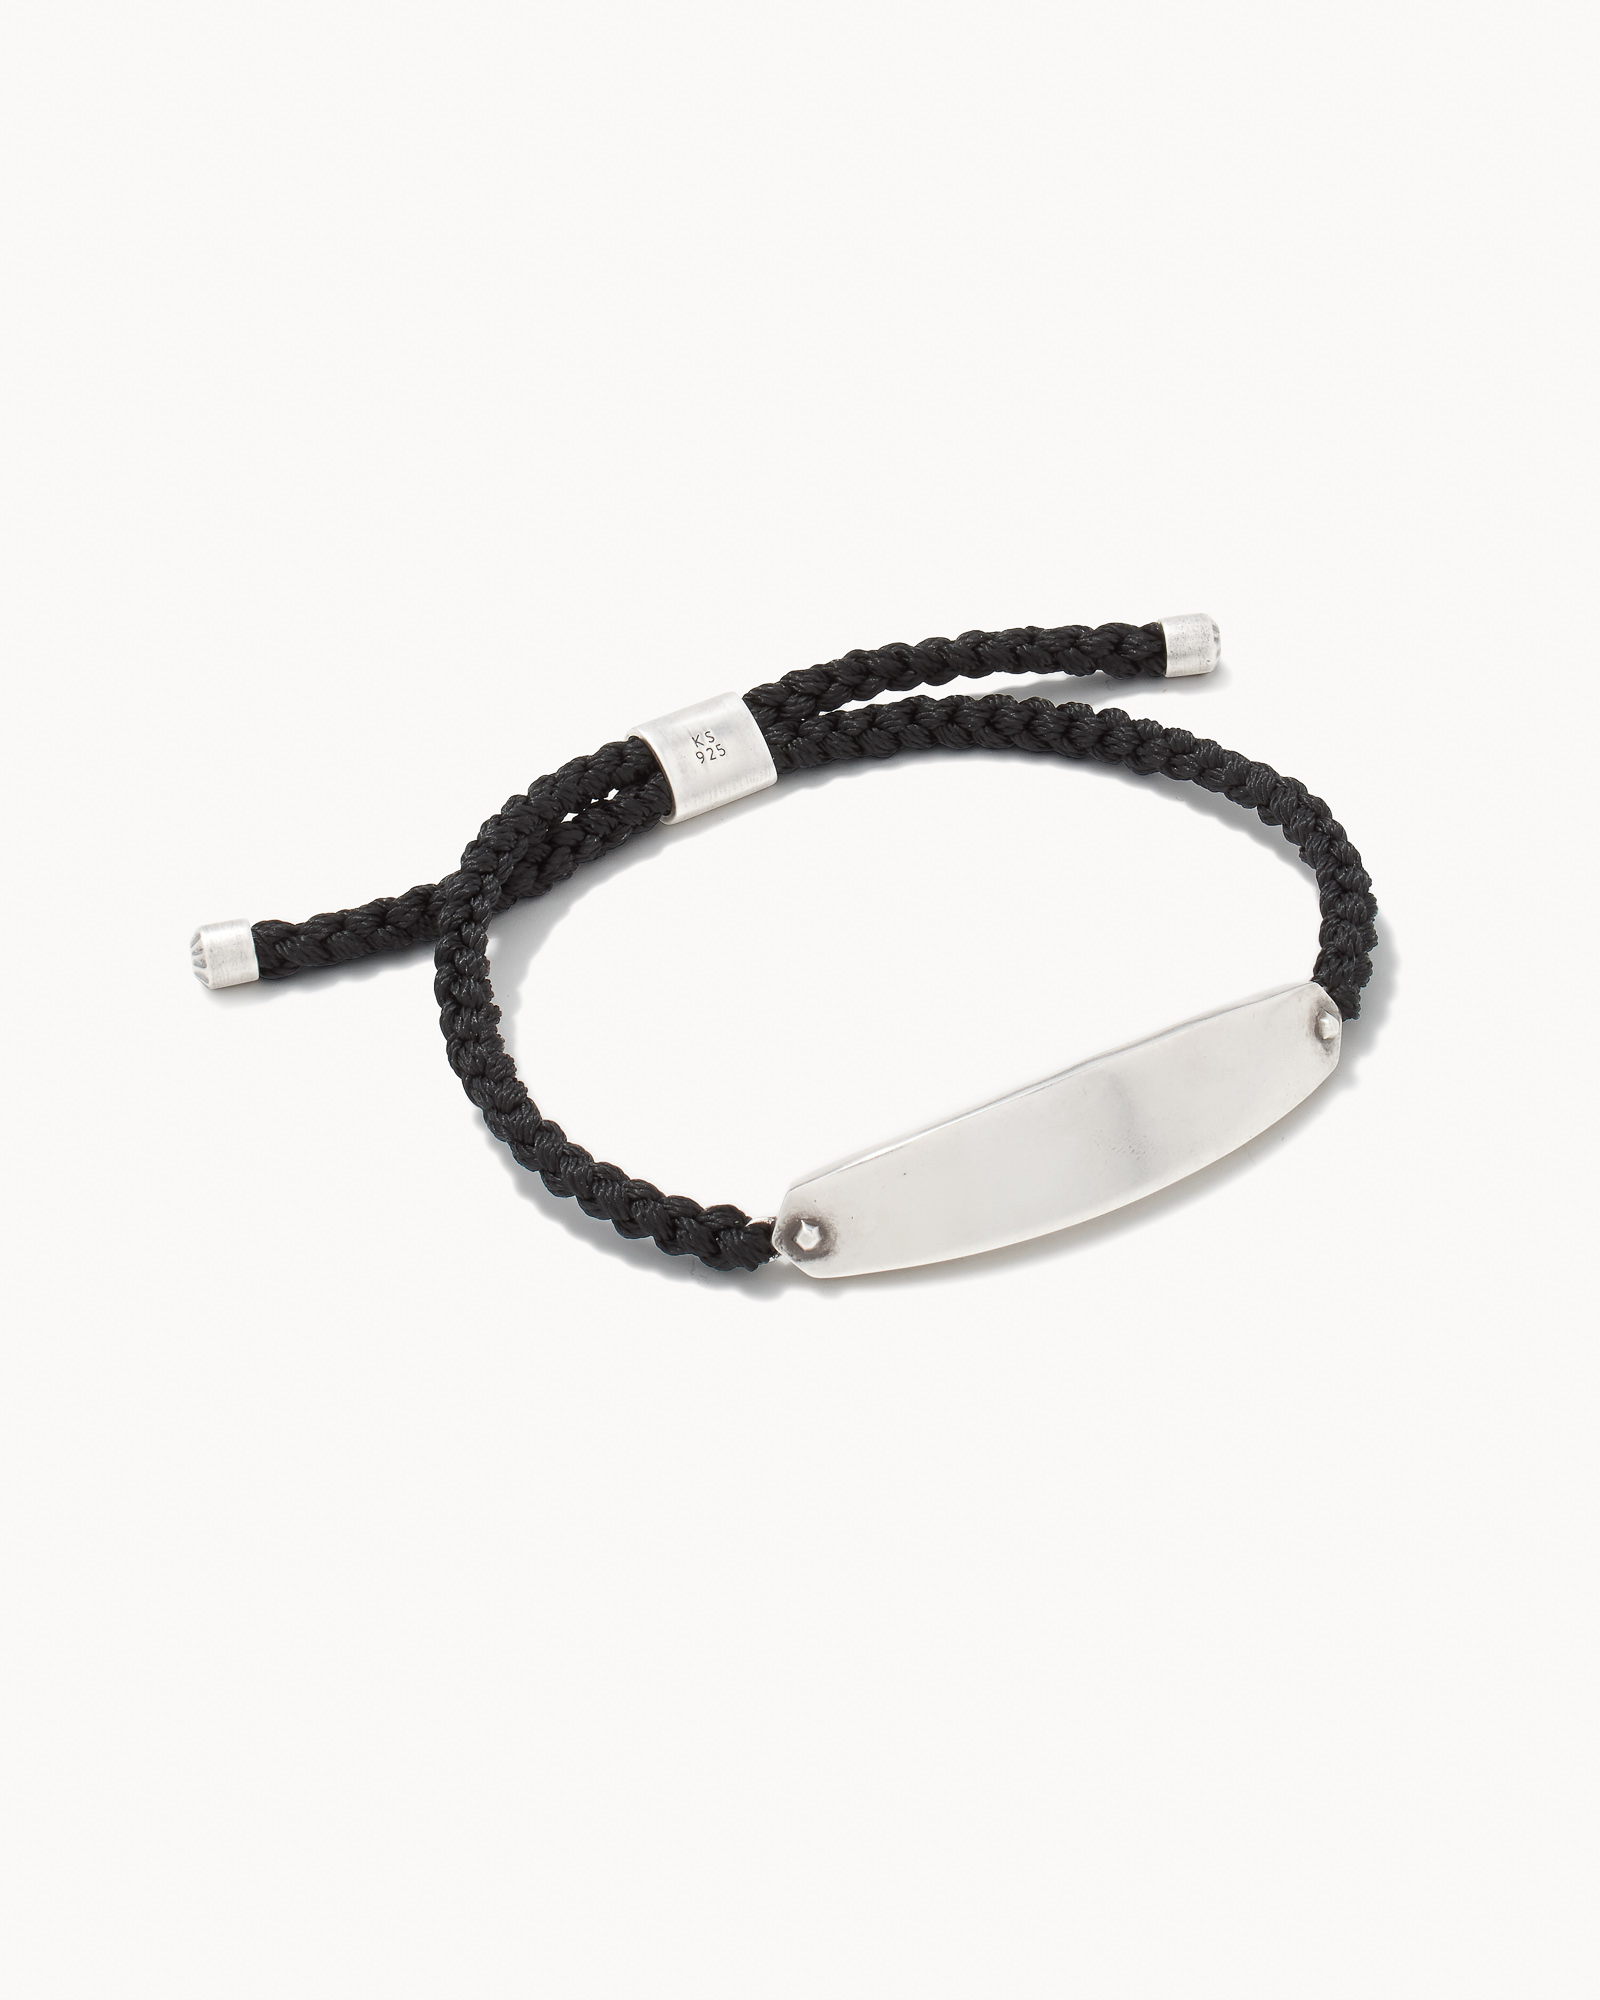 Robert Oxidized Sterling Silver Corded Bracelet in Black | Kendra Scott